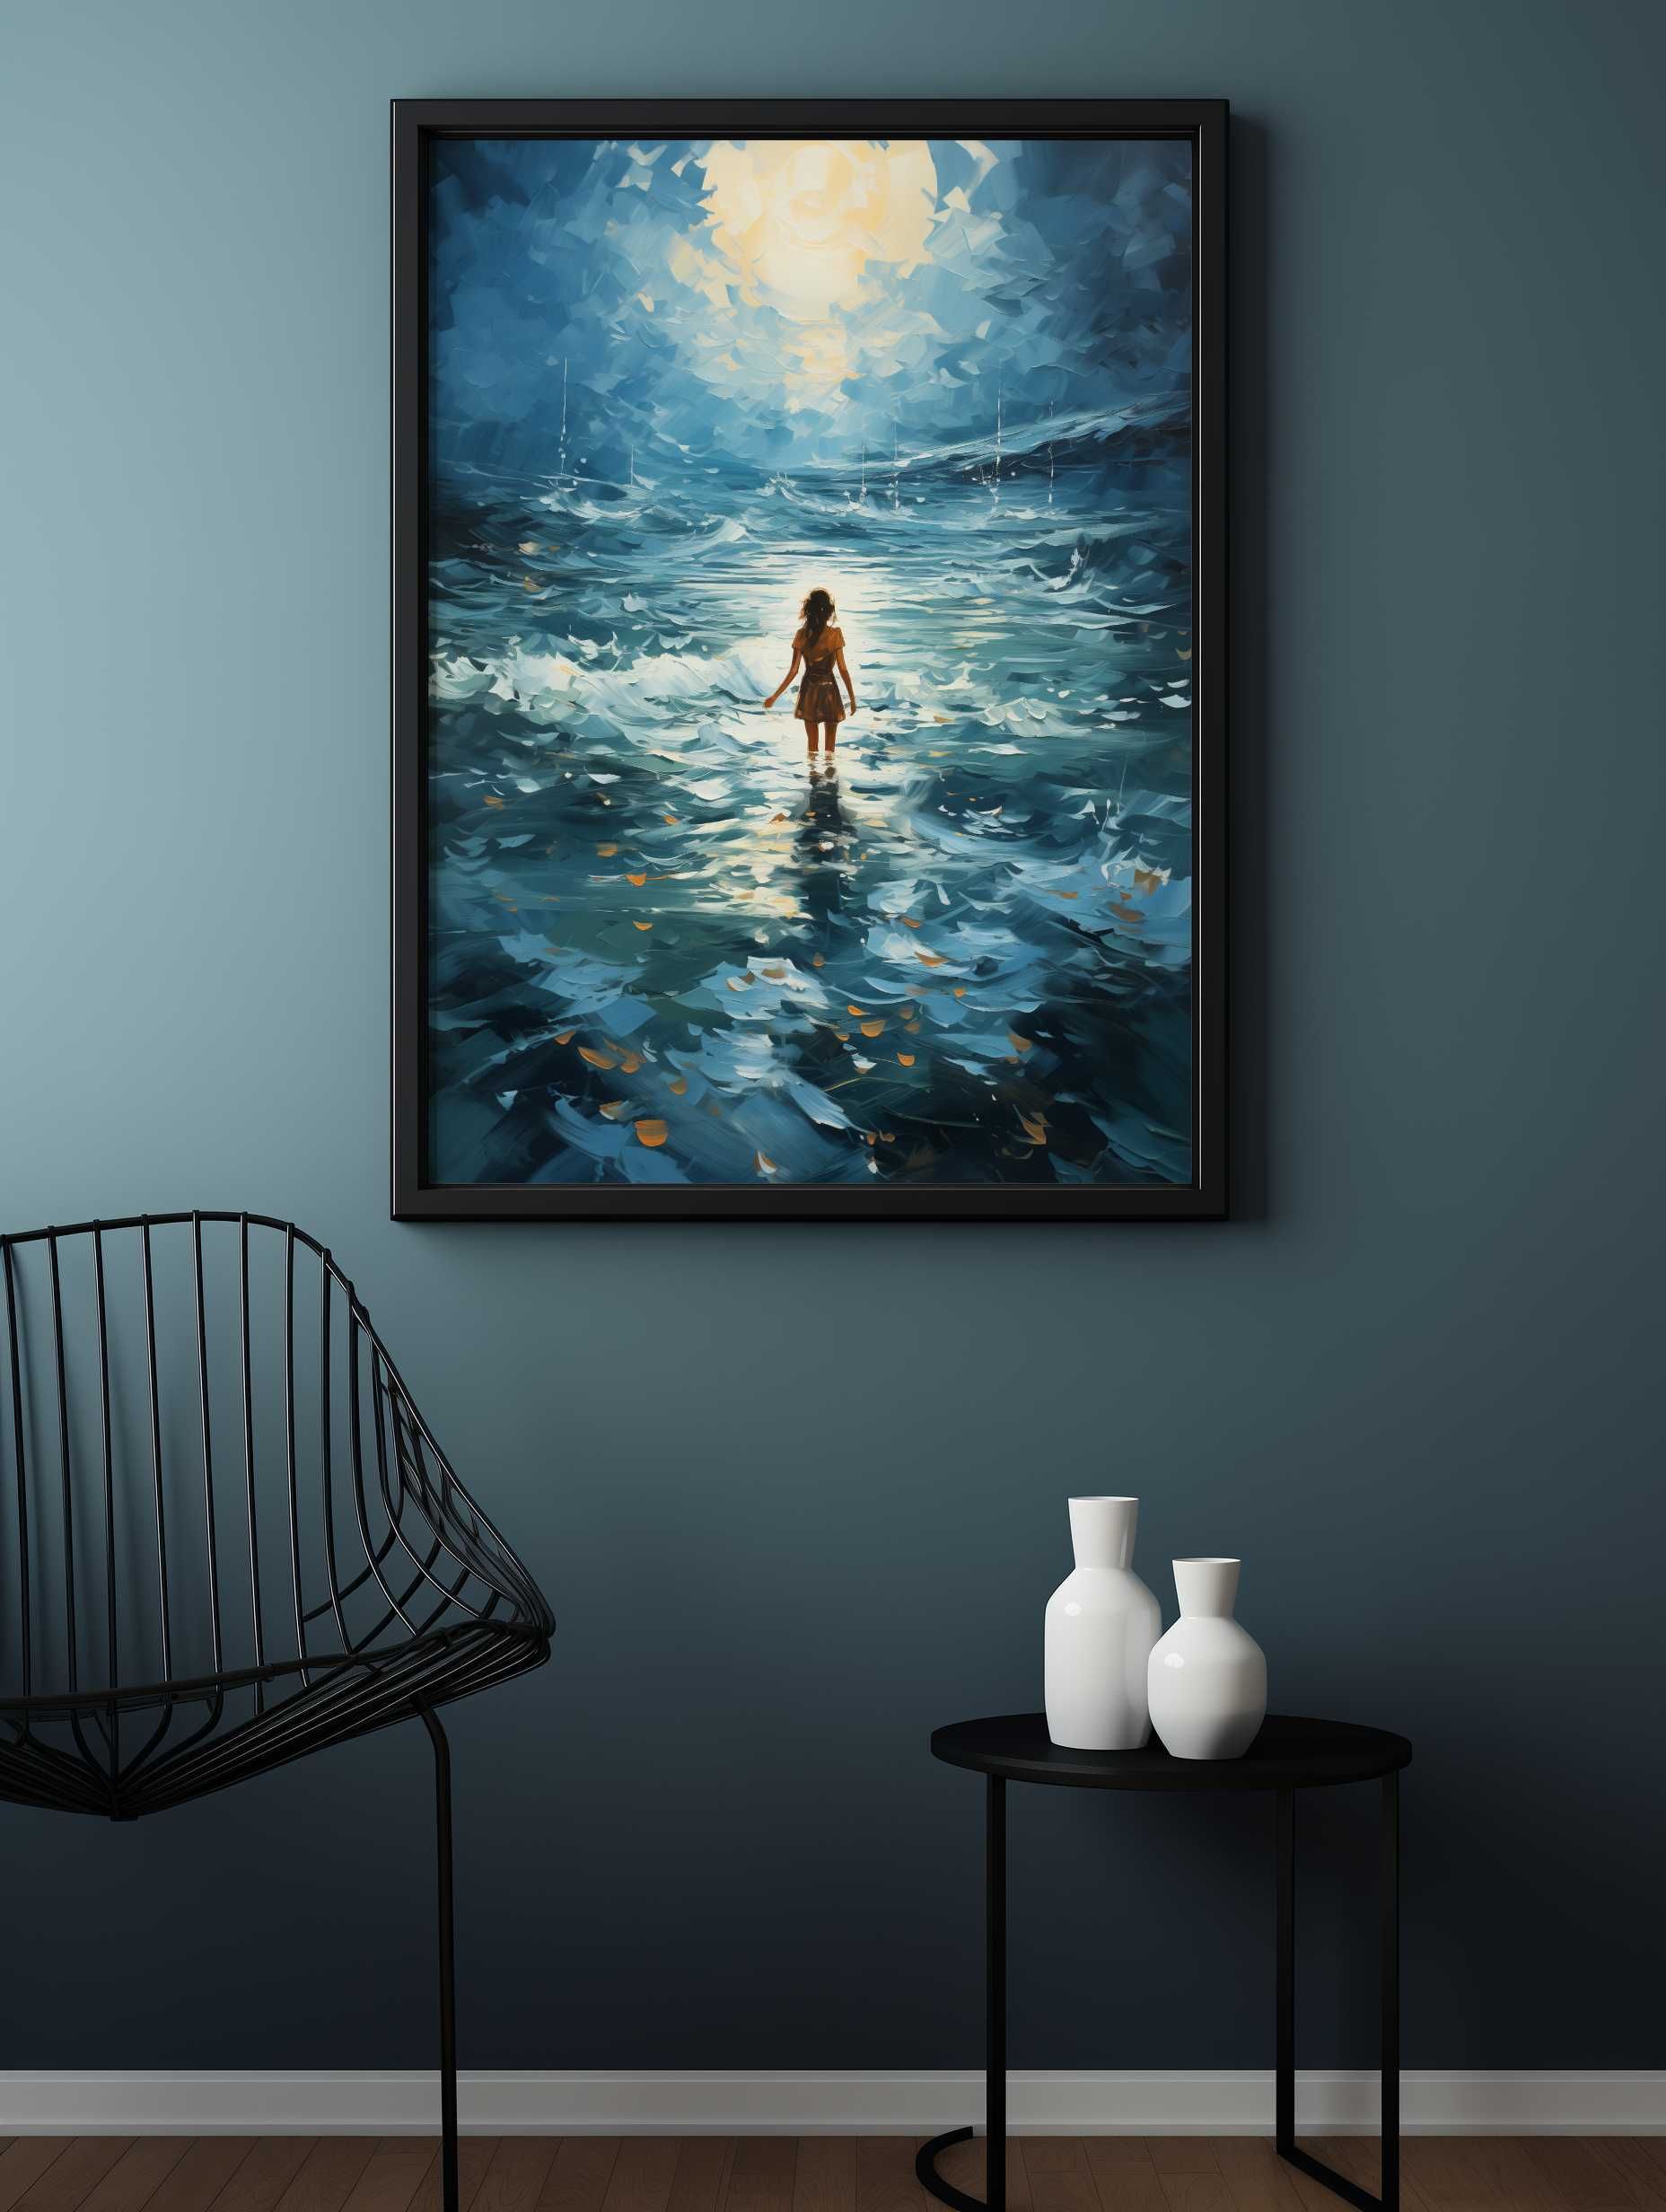 Plakat na Ścianę Obraz Morze Noc Księżyc Kobieta 50x70 cm Premium